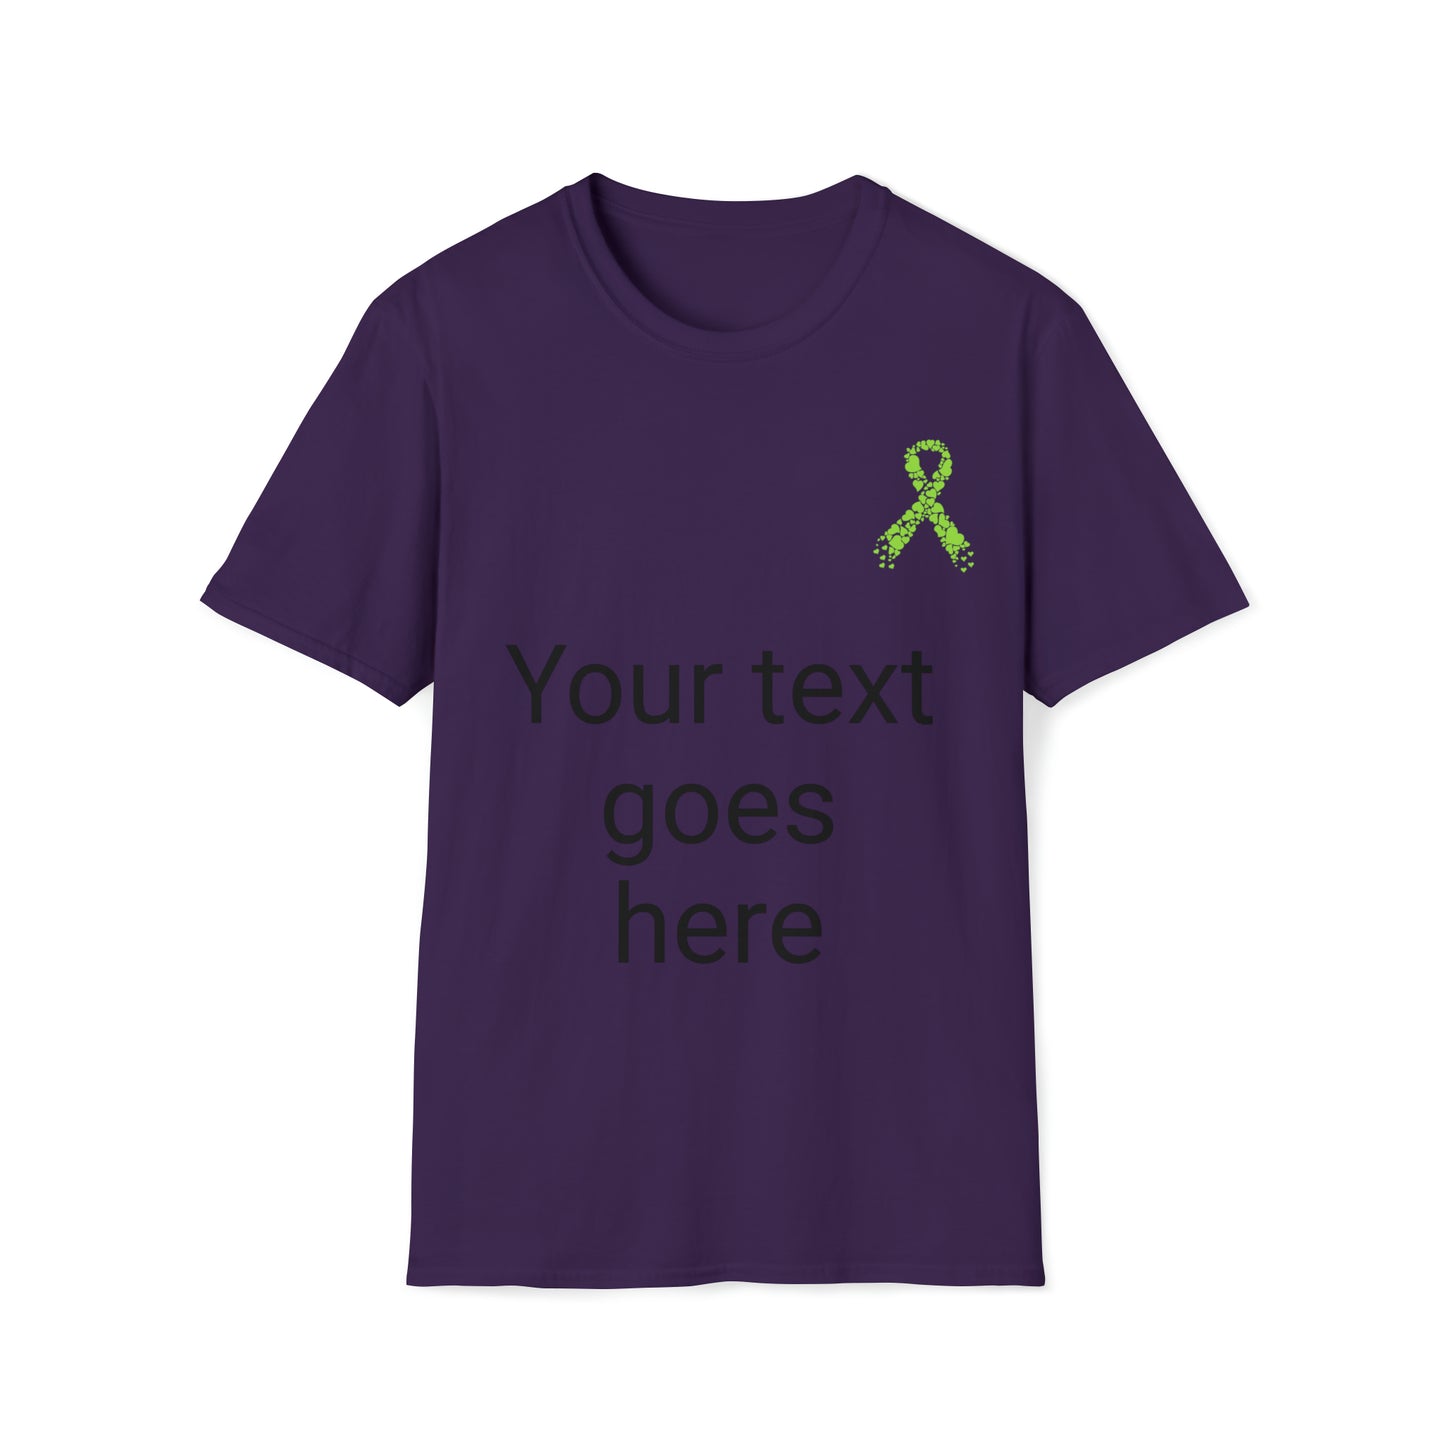 Customizable Lymphoma Awareness Tee Shirt